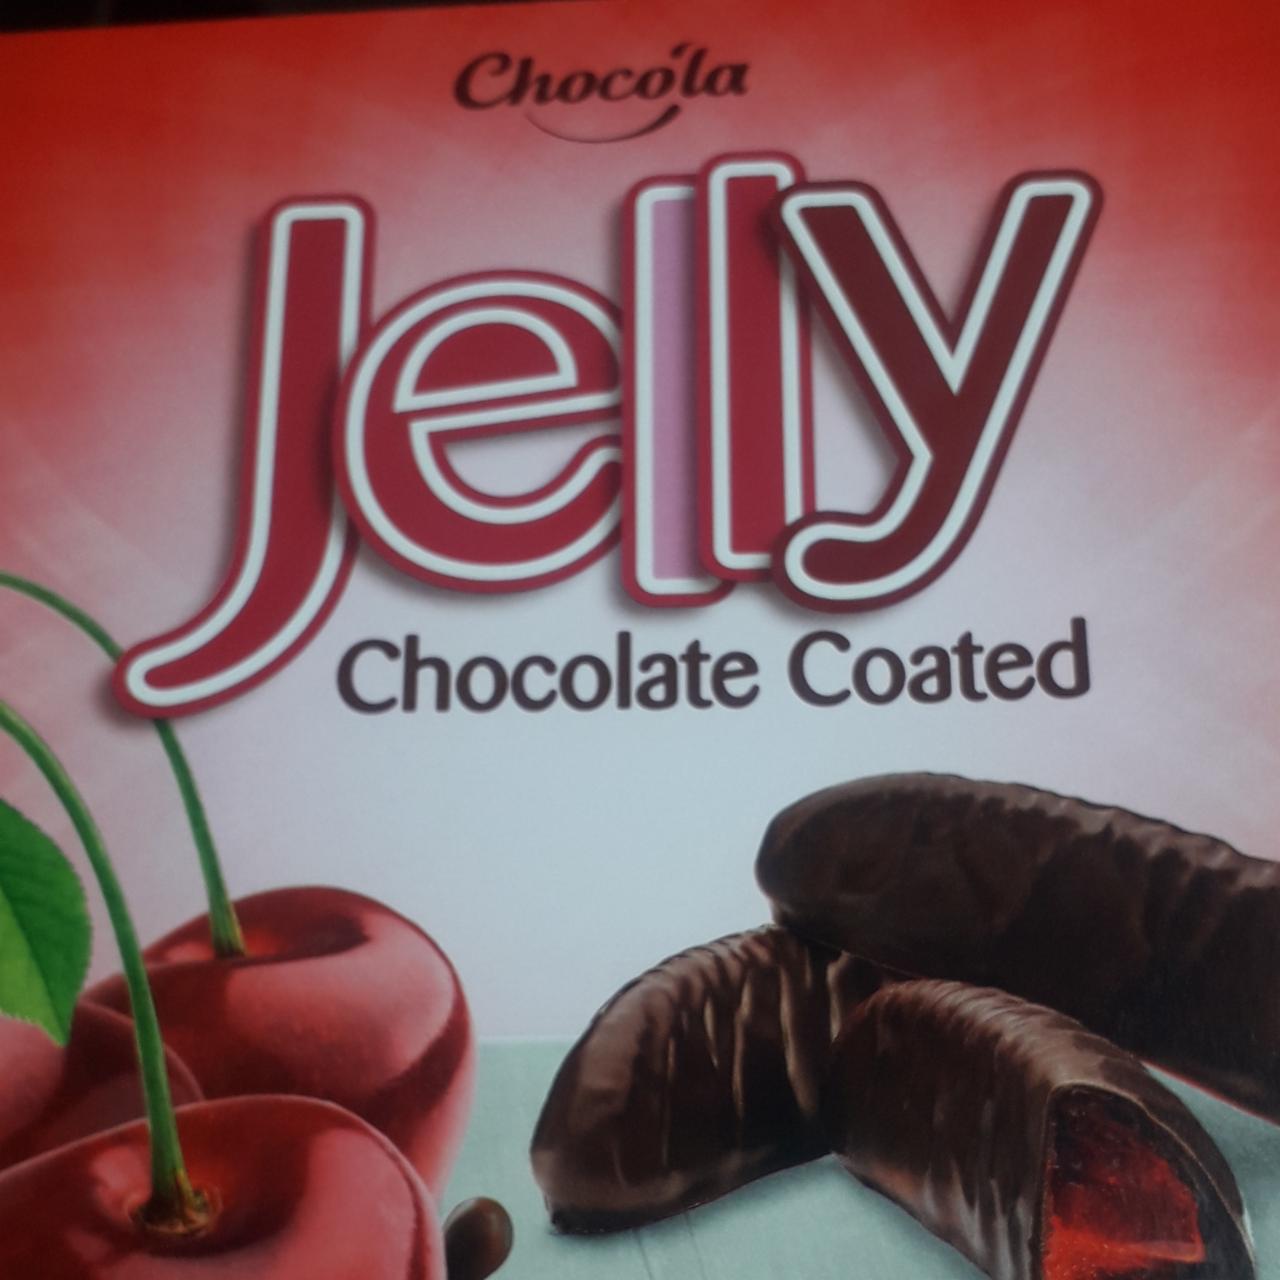 Képek - Jelly Chocolate coated Chocóla